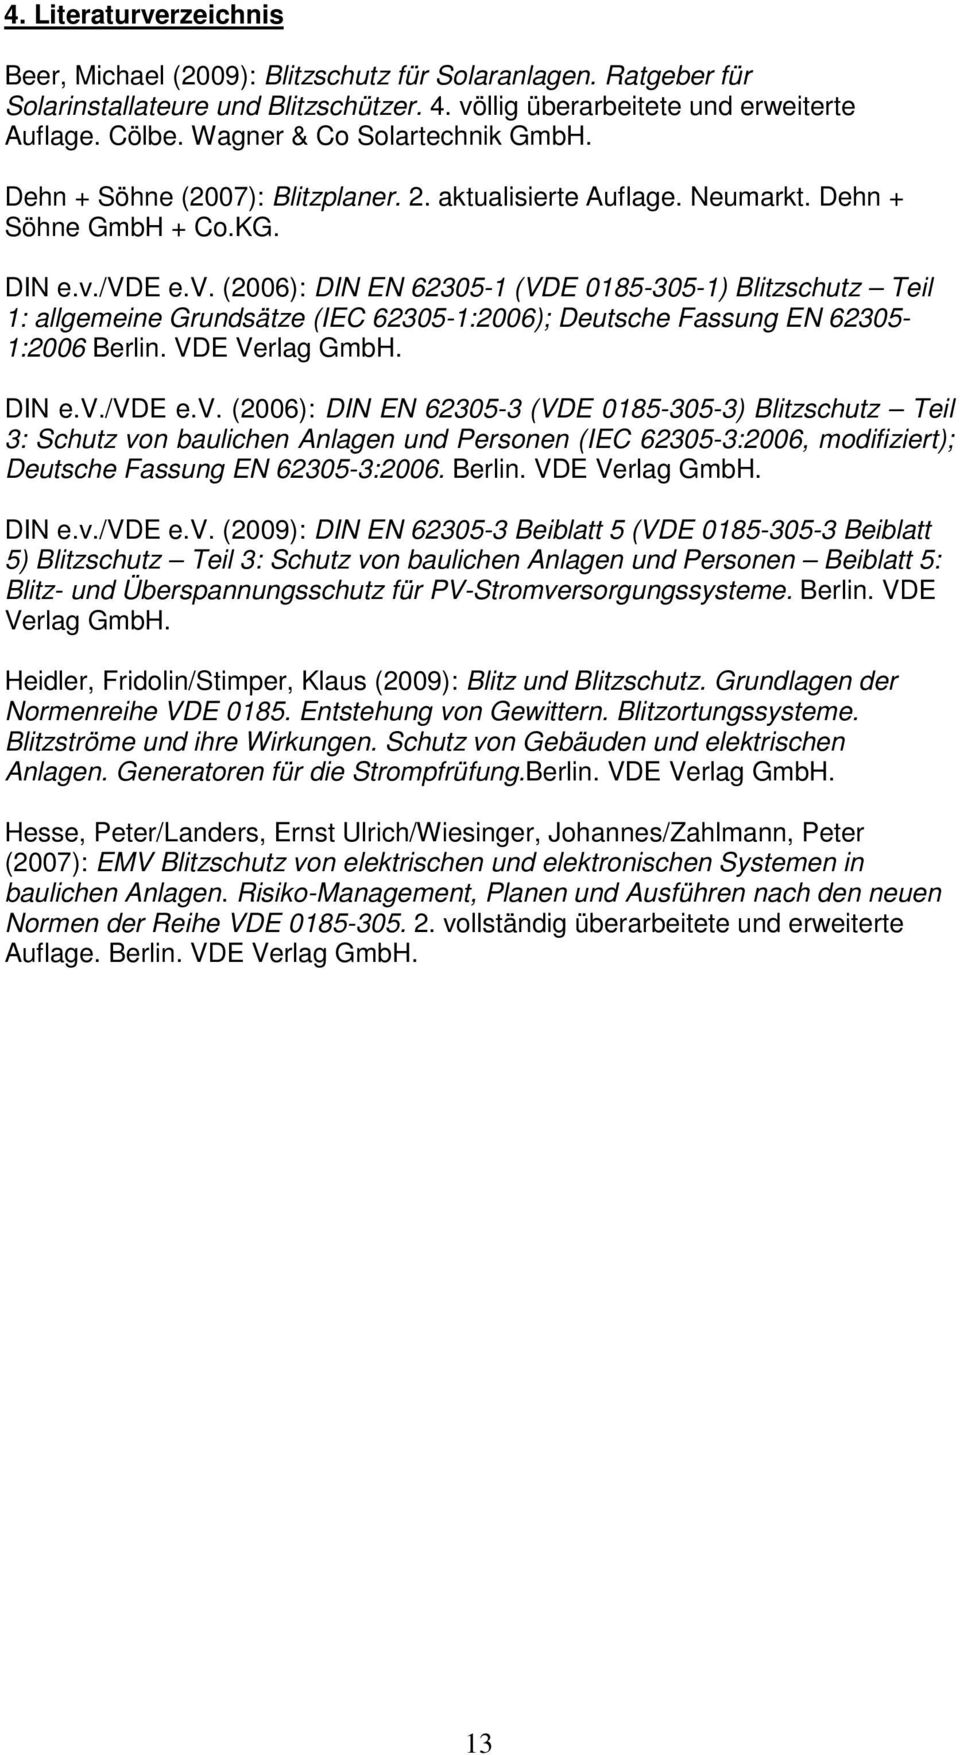 /vde e.v. (2006): DIN EN 62305-1 (VDE 0185-305-1) Blitzschutz Teil 1: allgemeine Grundsätze (IEC 62305-1:2006); Deutsche Fassung EN 62305-1:2006 Berlin. VDE Verlag GmbH. DIN e.v./vde e.v. (2006): DIN EN 62305-3 (VDE 0185-305-3) Blitzschutz Teil 3: Schutz von baulichen Anlagen und Personen (IEC 62305-3:2006, modifiziert); Deutsche Fassung EN 62305-3:2006.